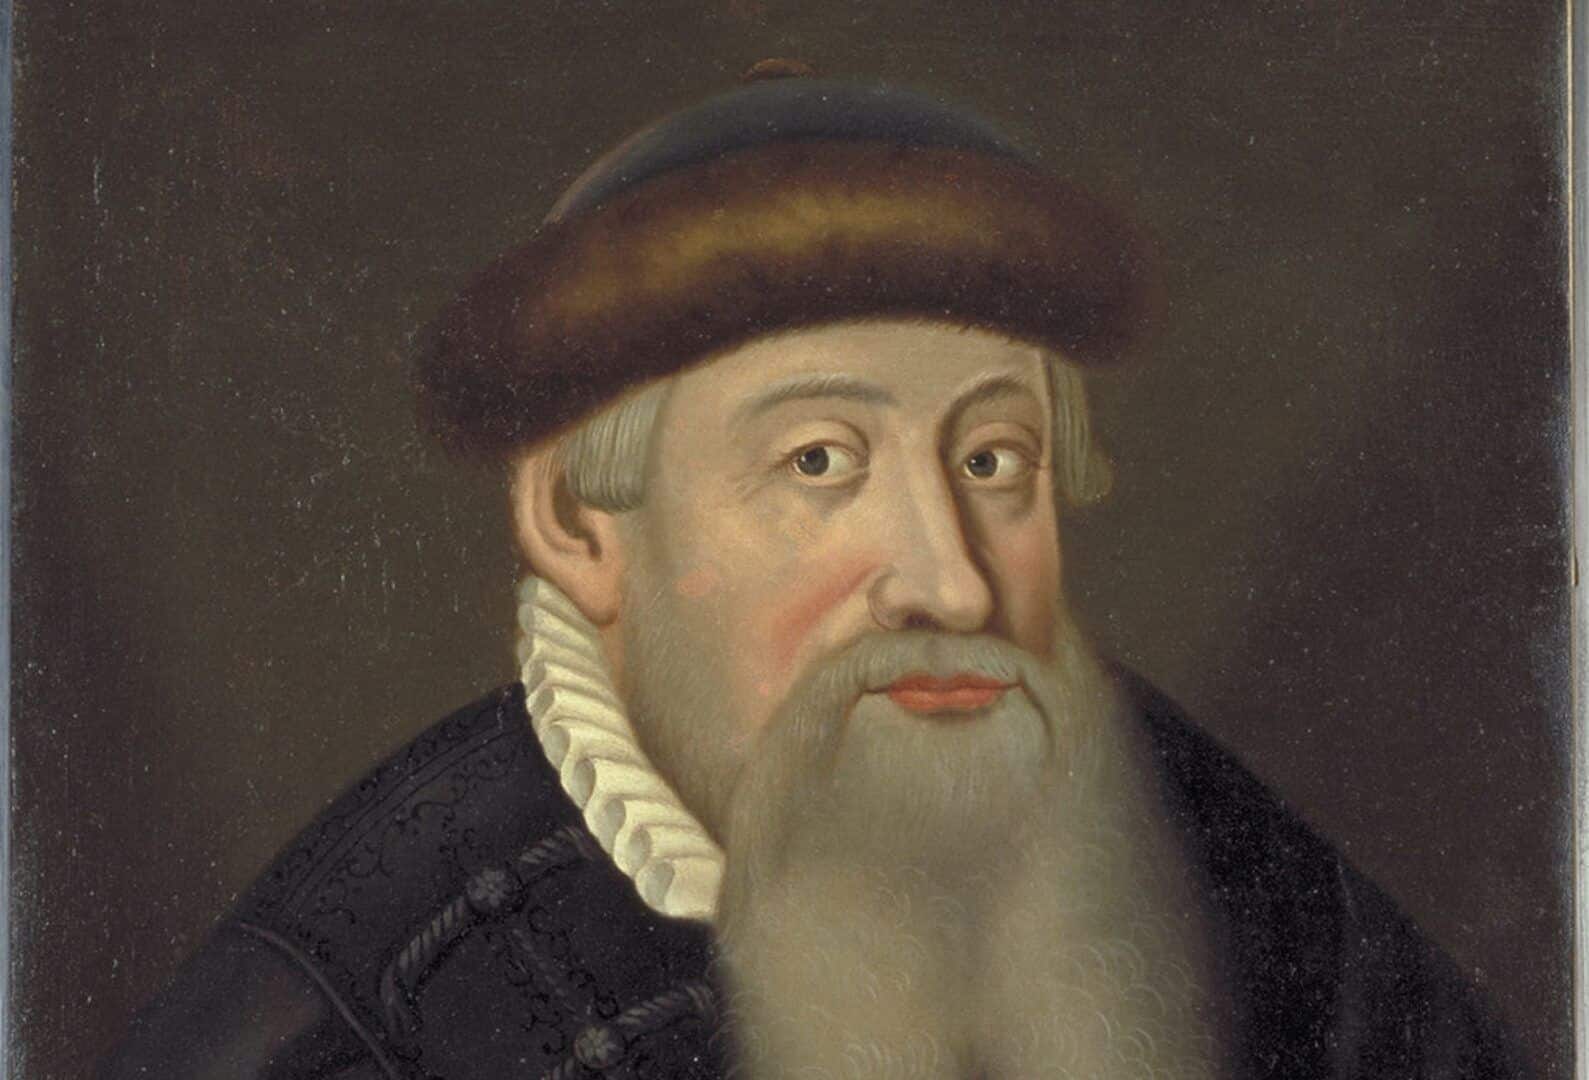 Johannes Gutenberg, quem foi? Biografia, tipografia e impressão da Bíblia